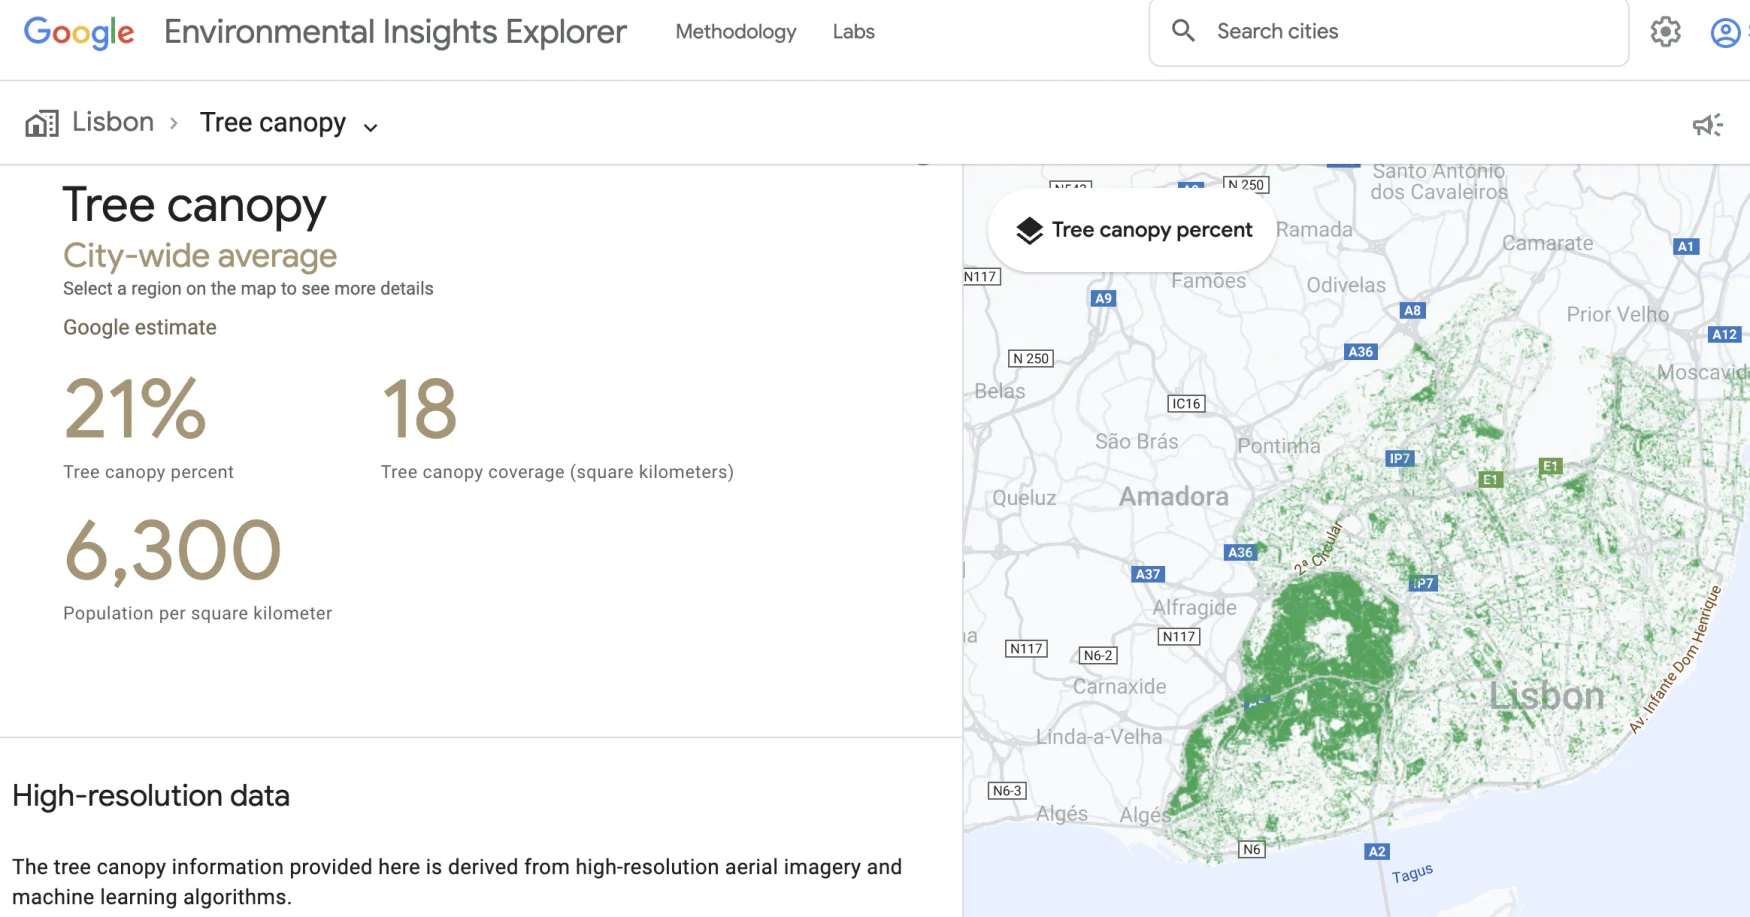 снимок экрана Google EIE, показывающий покрытие крон деревьев в Лиссабоне, Испания, по всему городу.